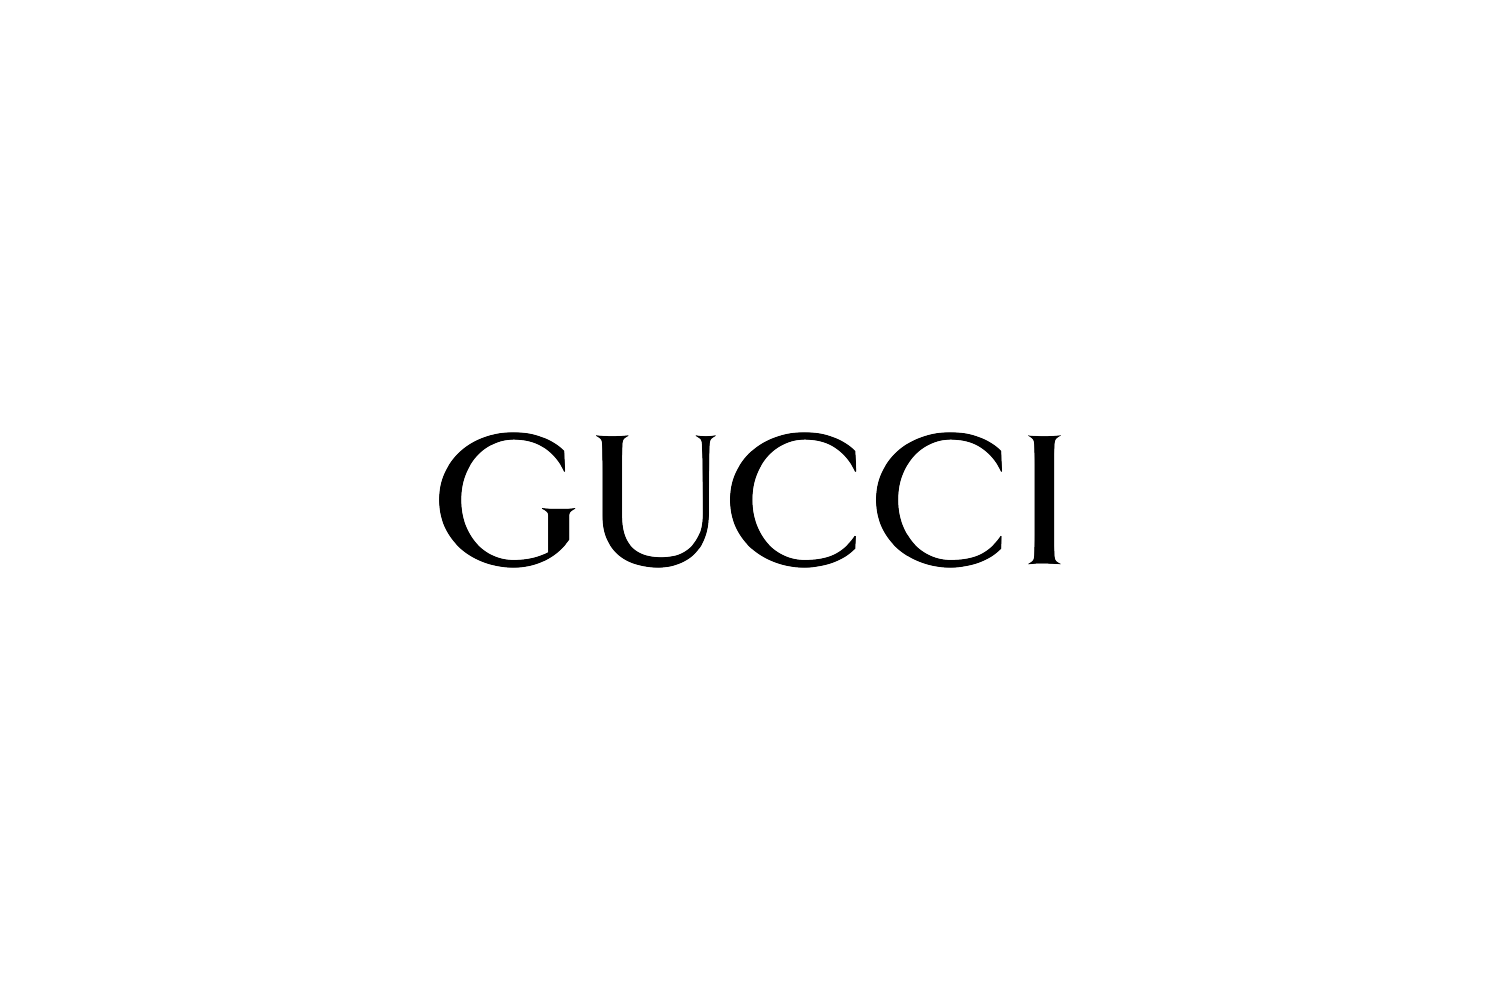 Gucci logo black and white